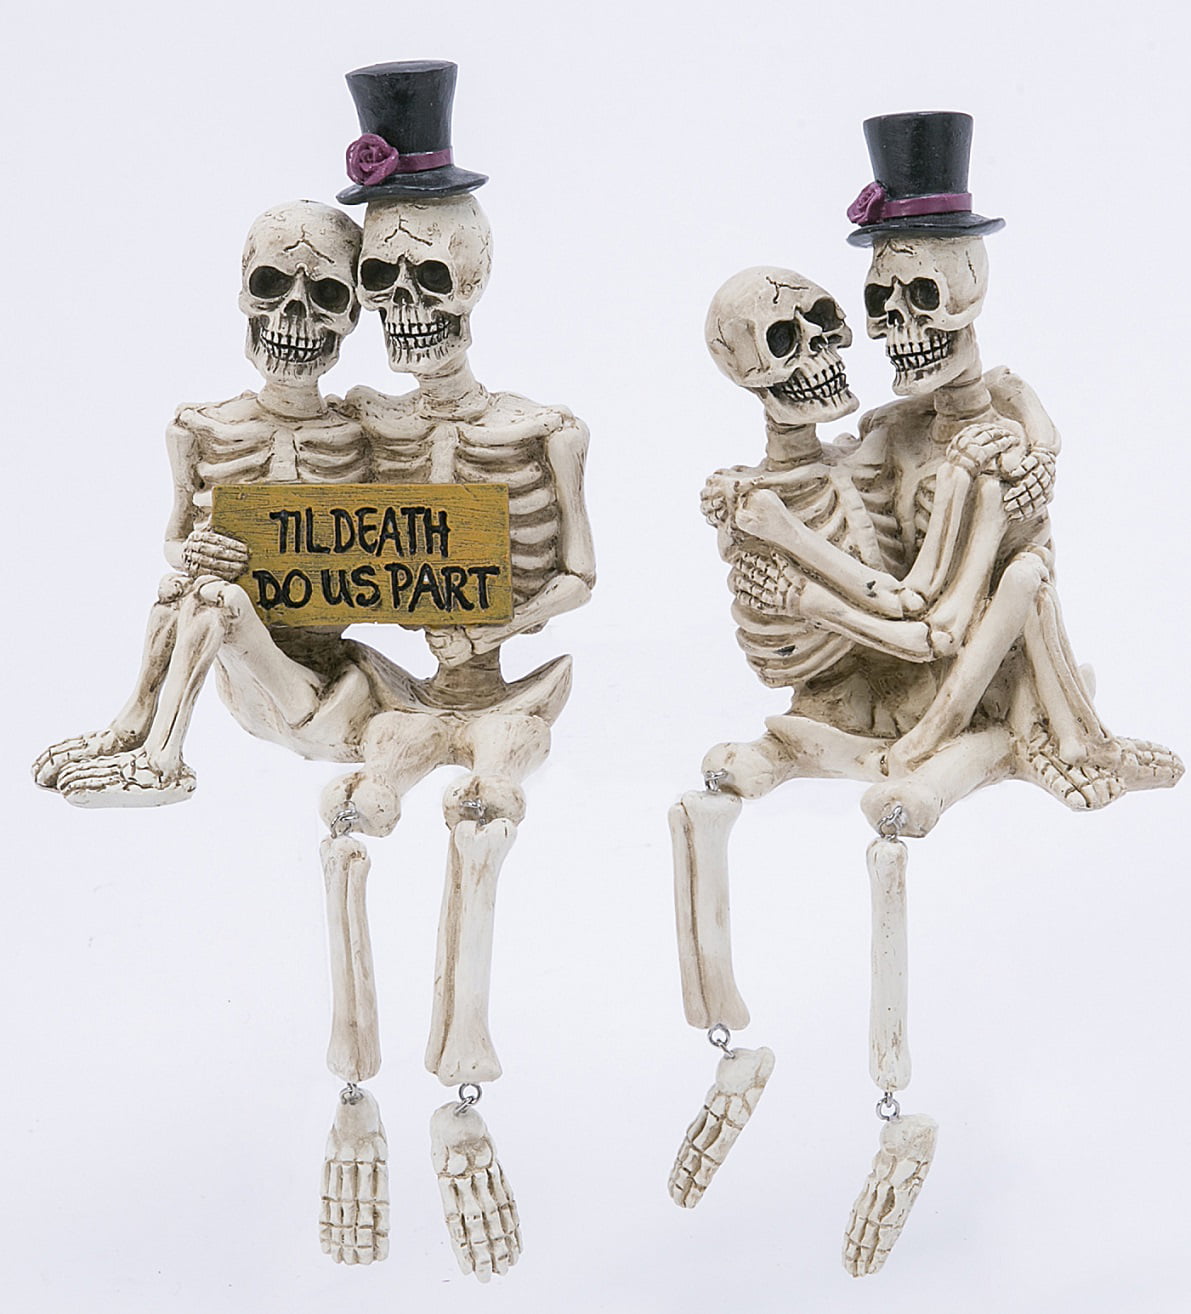 Mr & Mrs Ghost Skeleton Couple Black & White Sitting Dolls 15 1/2"T Halloween